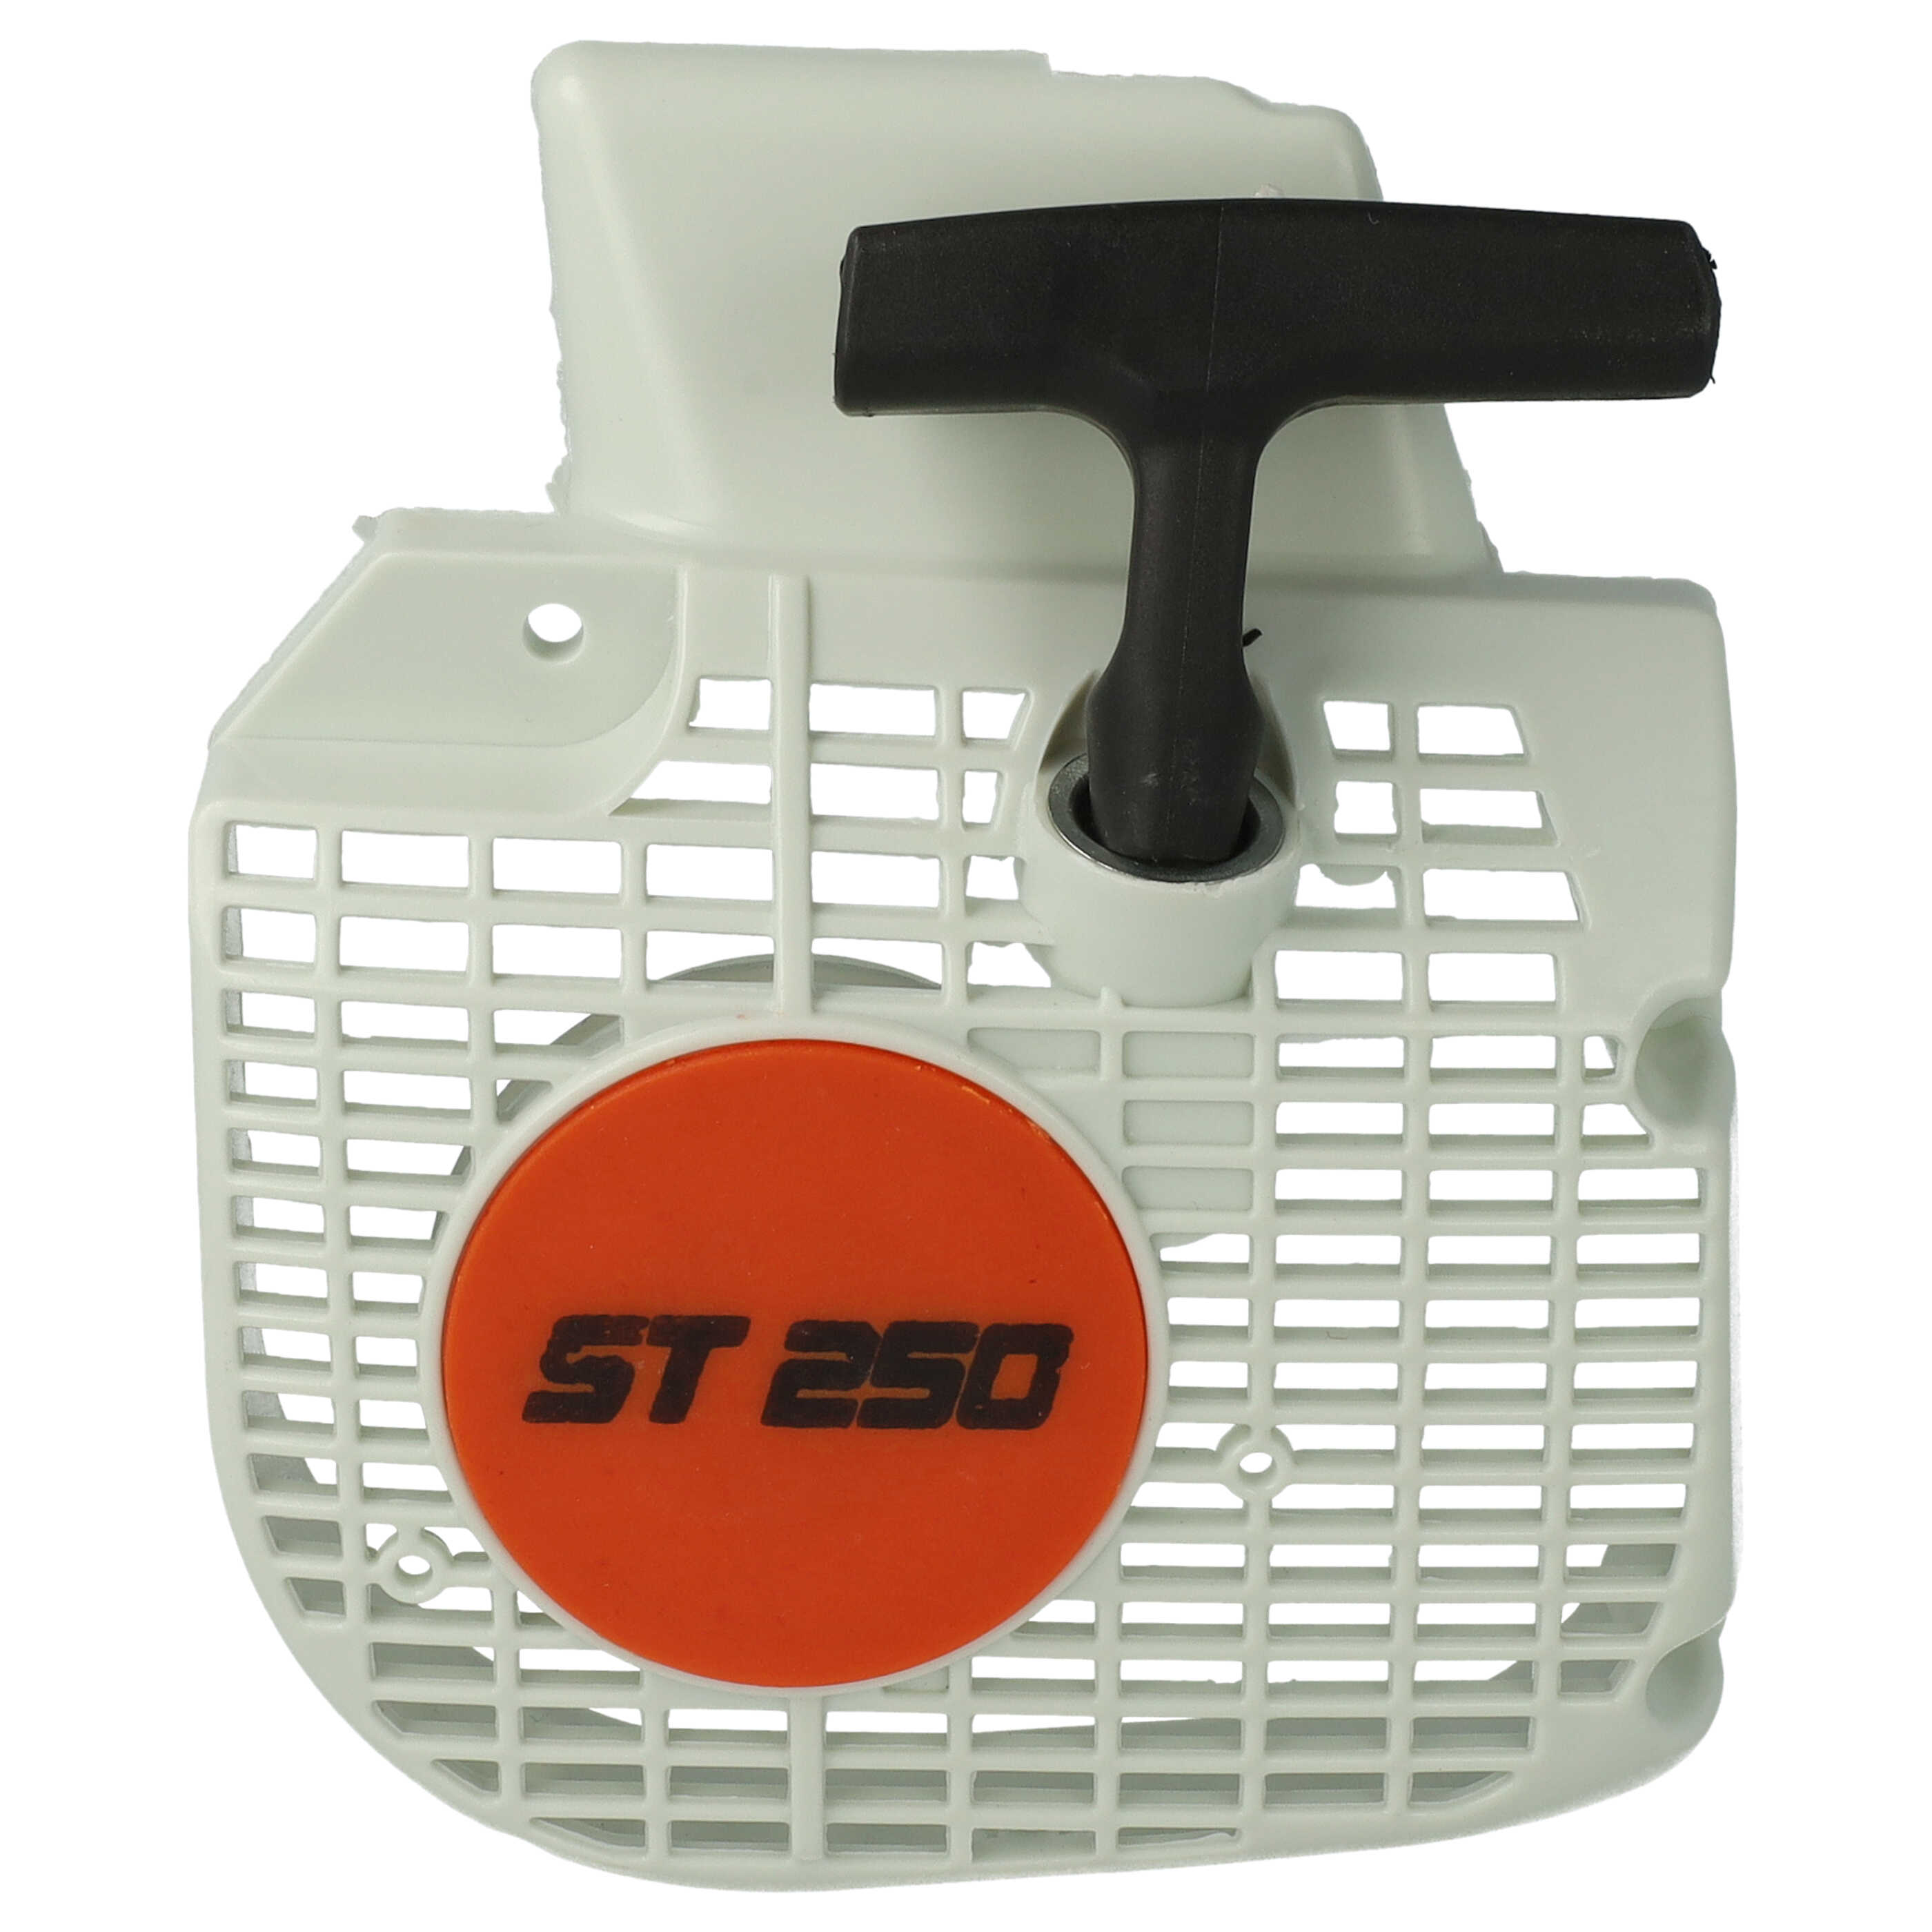 Seilzugstarter als Ersatz für Stihl 1123-080-1802 passend für Stihl Motorsäge - 16,7 x 13,8 x 3,8 cm